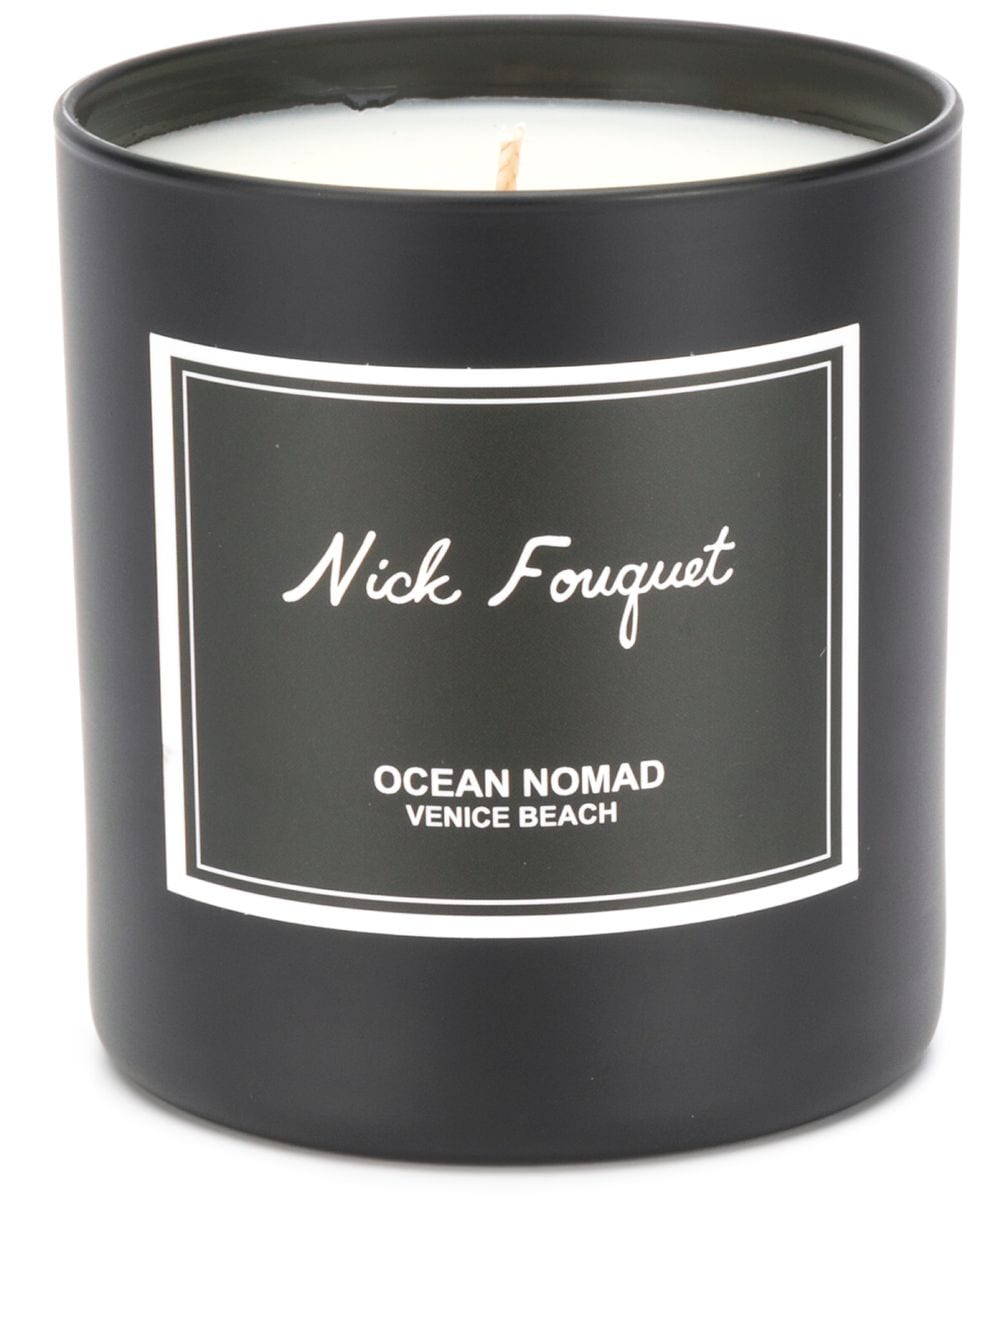 фото Nick fouquet свеча ocean nomad